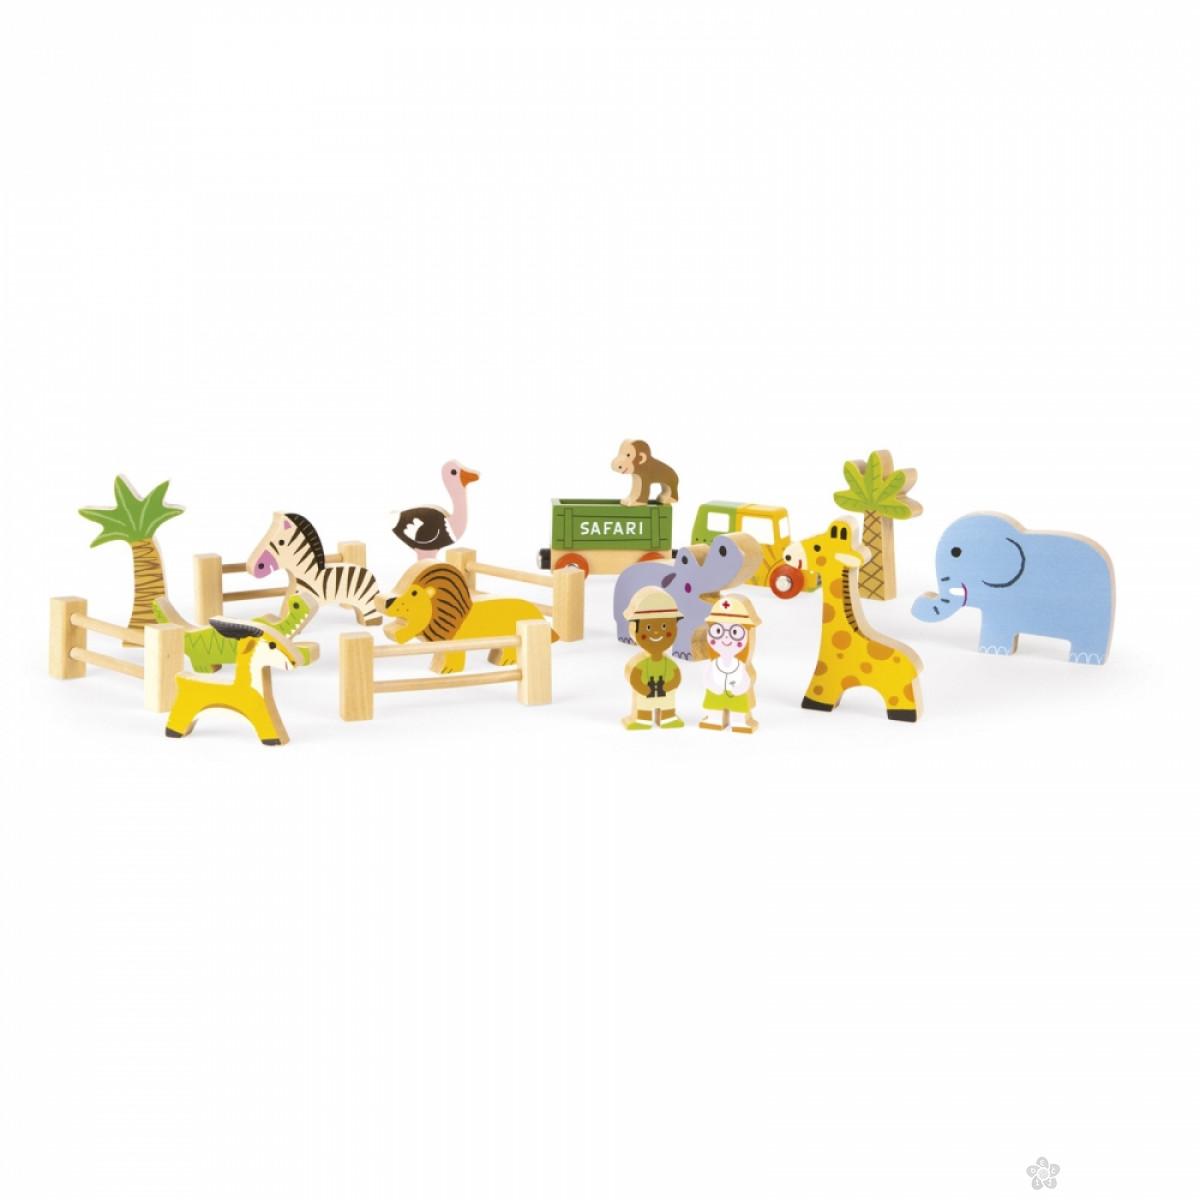 Drvena igračka Story Box – Safari J08542 